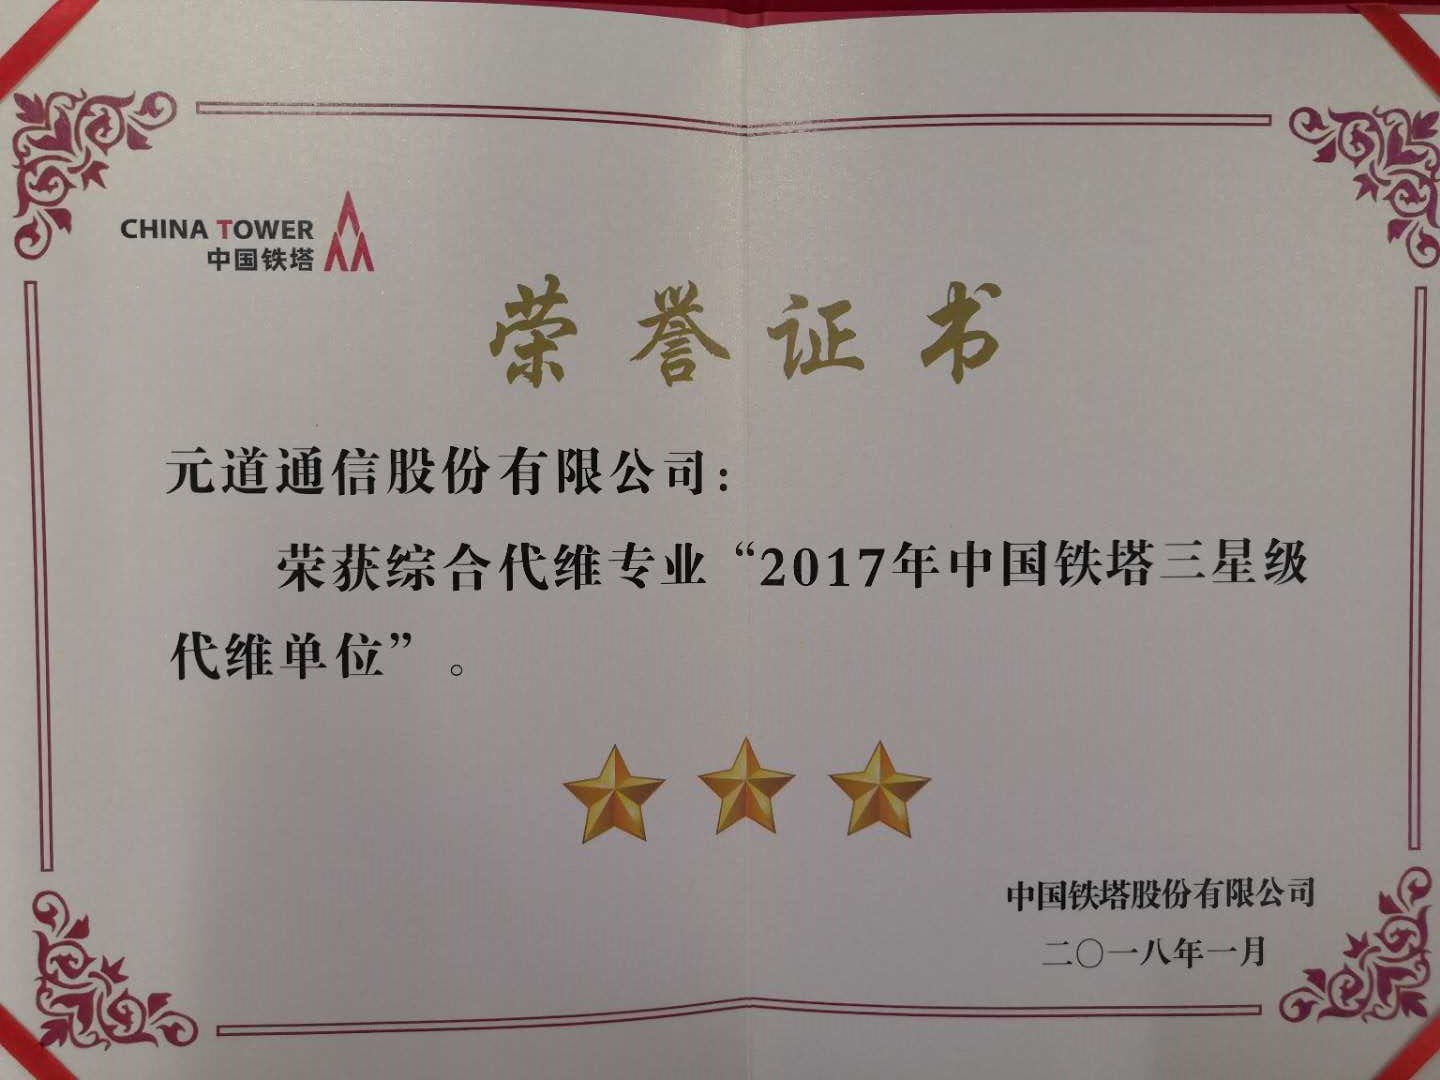 综合代维专业2017年中国铁塔三星级代维单位